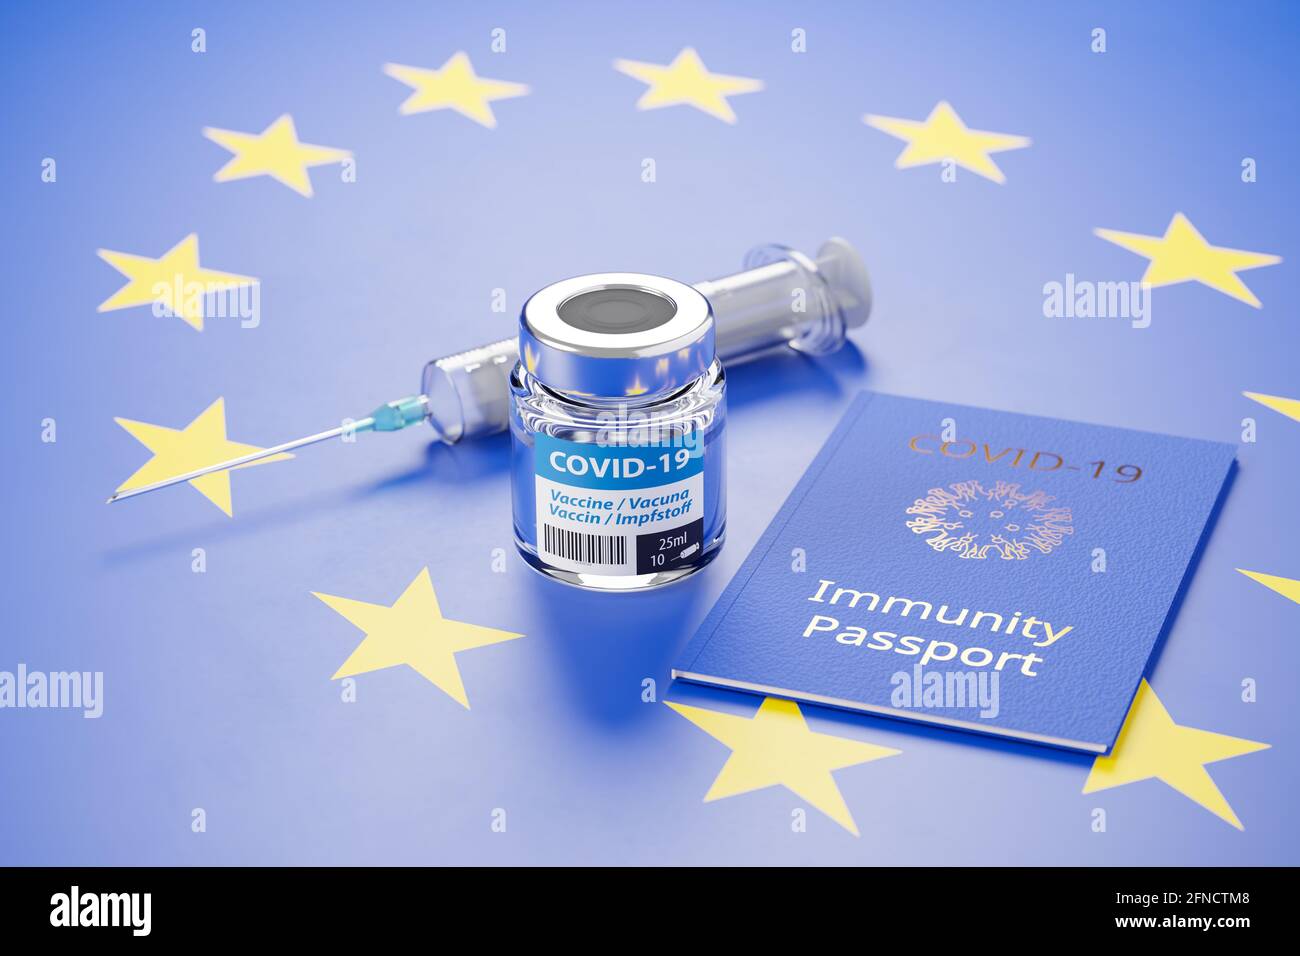 Pasaporte de Inmunidad para Europa Concepto: Un vial de vacuna Covid-19, una jeringa y un pasaporte de inmunidad se embolsaron sobre un fondo de bandera de la UE en azul con yello Foto de stock